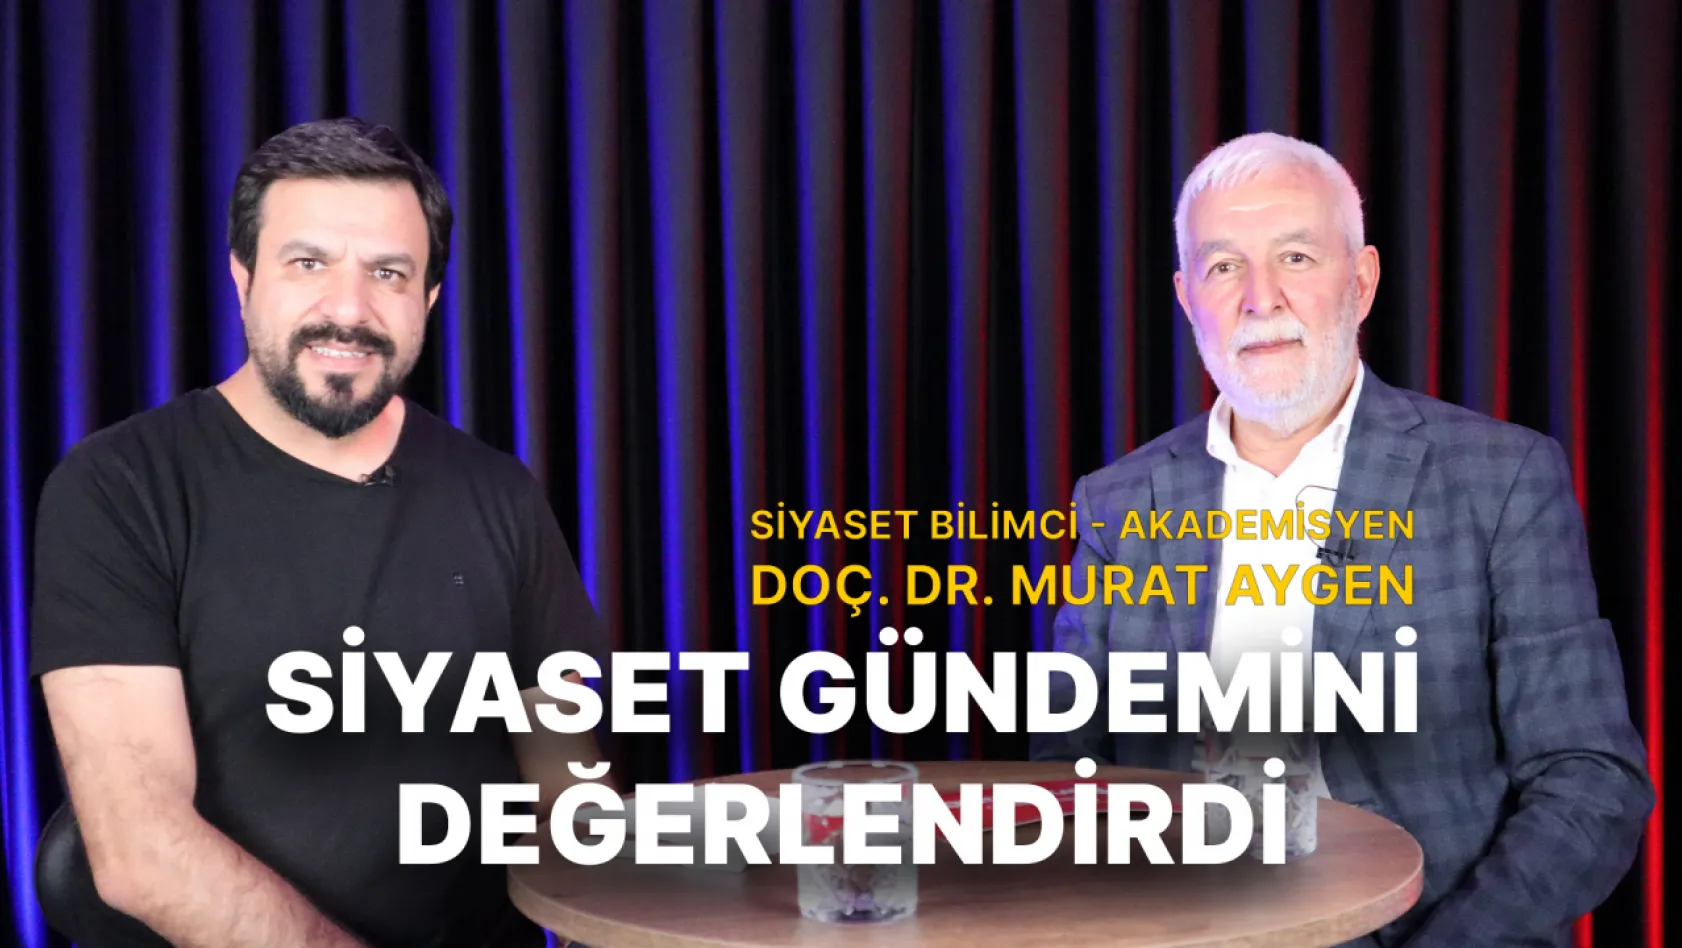 Siyaset Bilimci - Akademisyen Doç. Dr. Murat Aygen, siyaset gündemini değerlendirdi